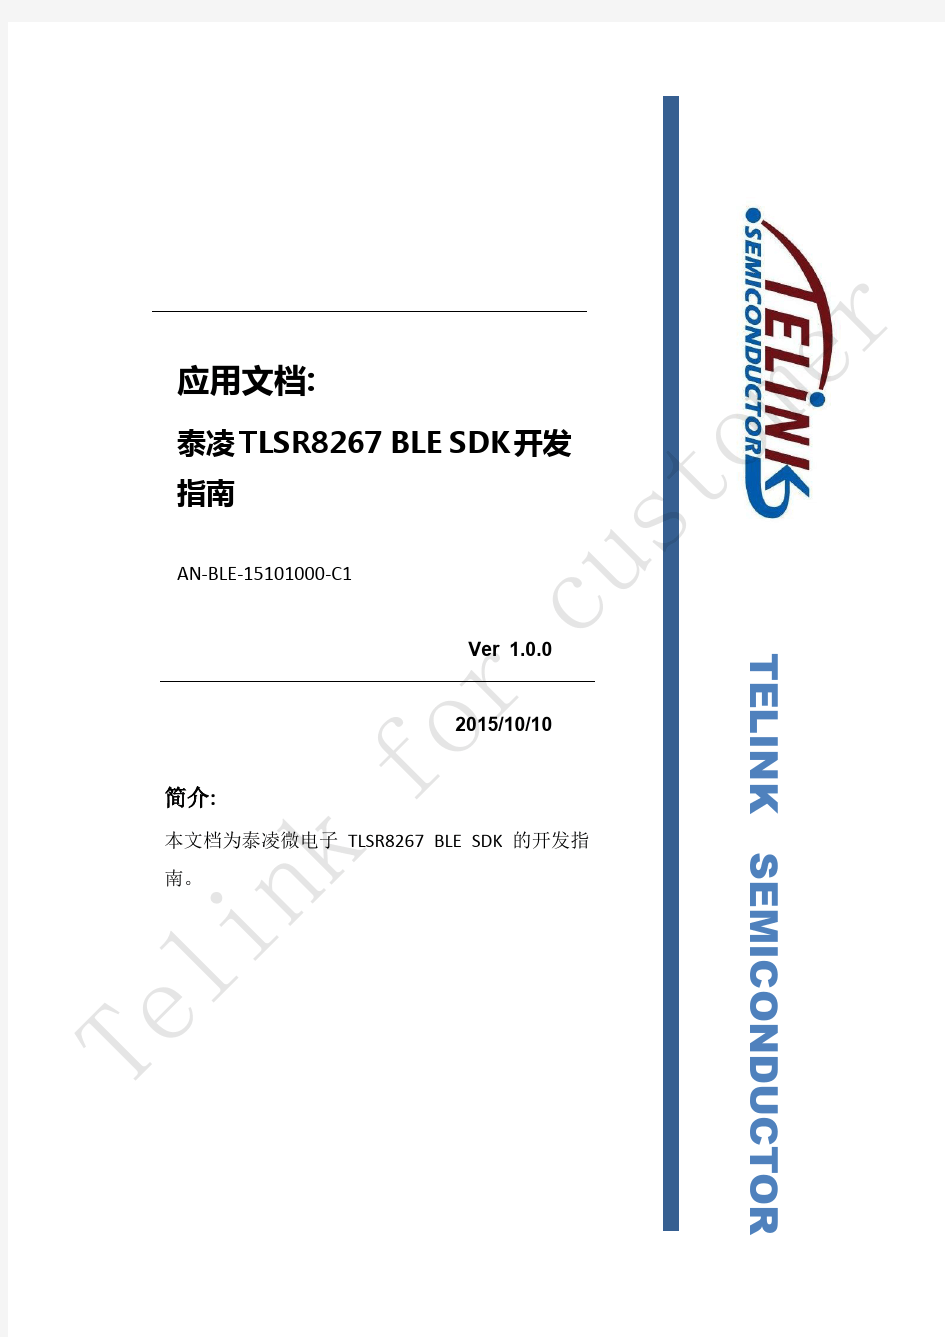 AN_BLE-15101000-C1_Telink 8267 BLE SDK Developer Handbook